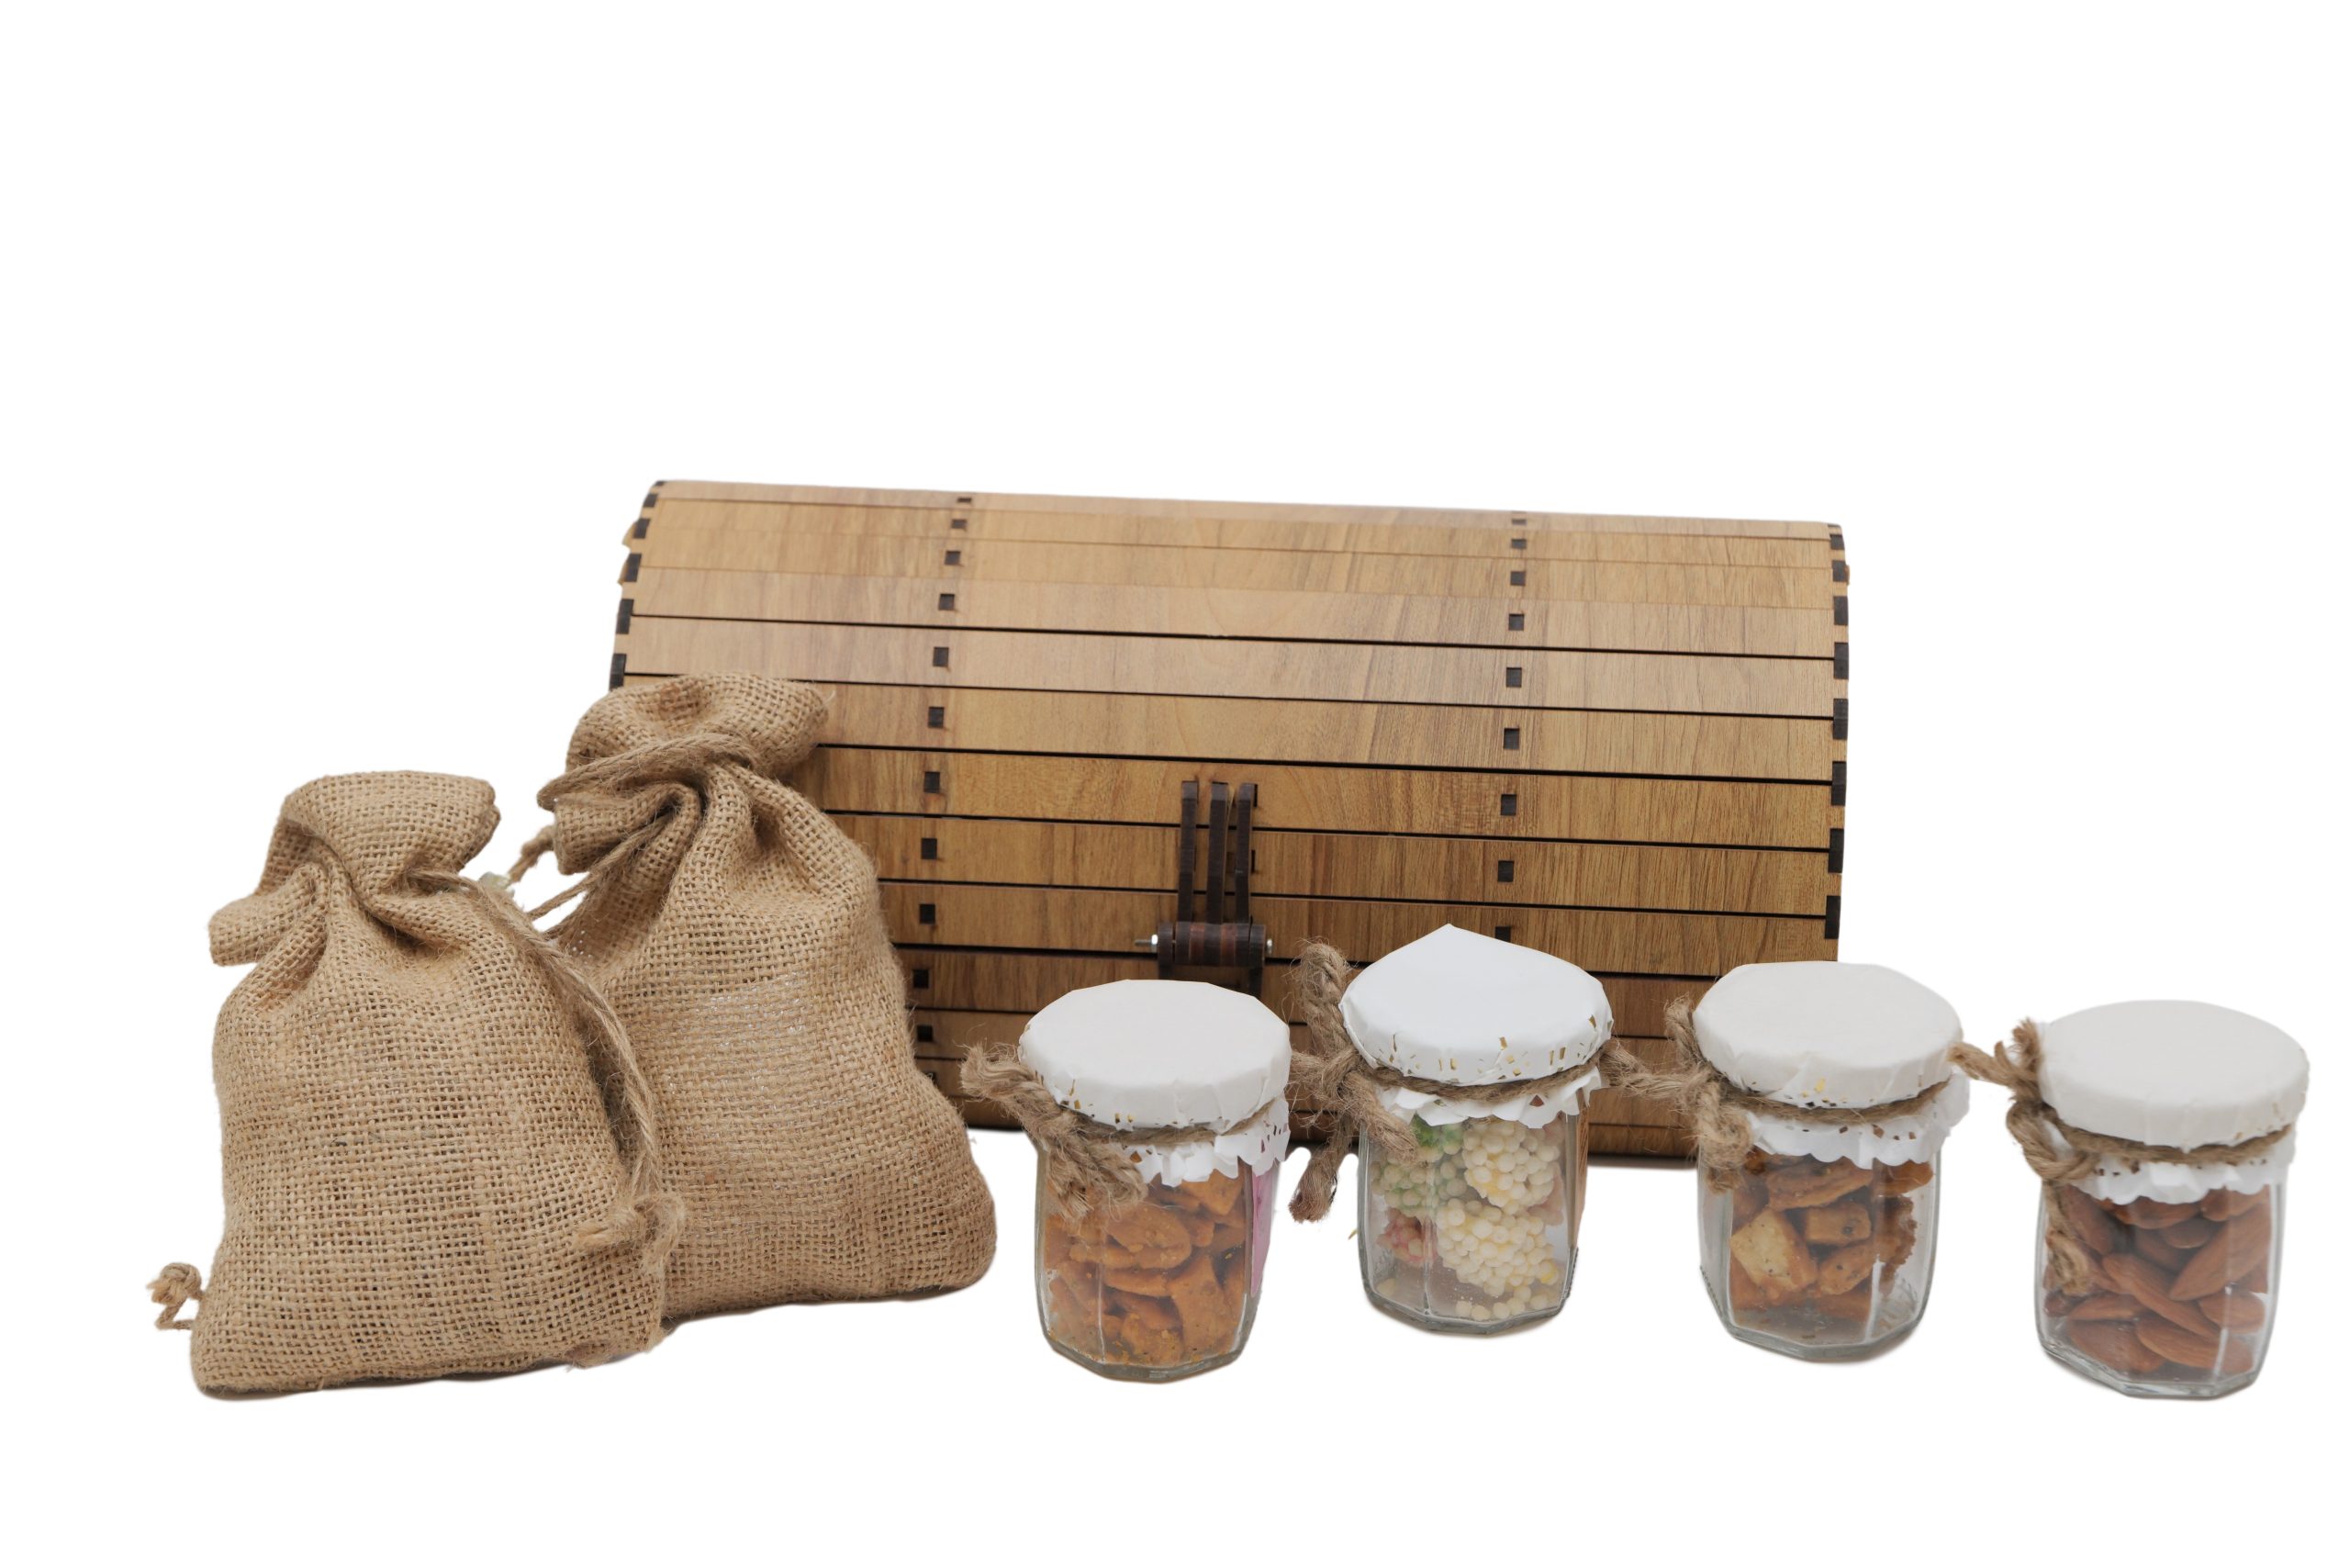 Wooden box - 4 jars / potlis